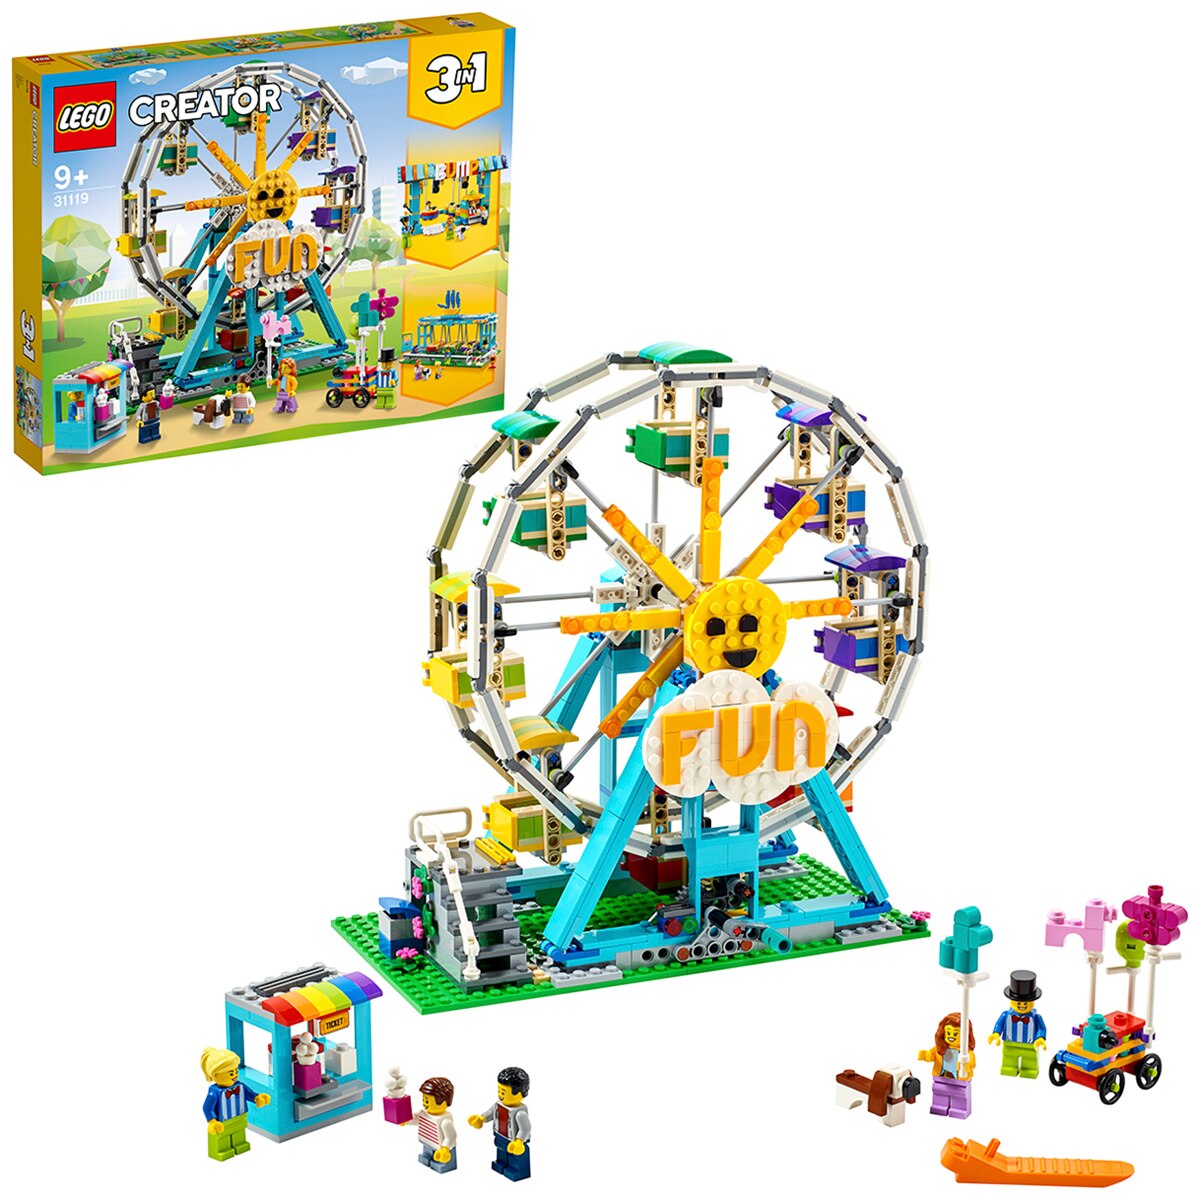 Lego Creator Ferris Wheel 31119